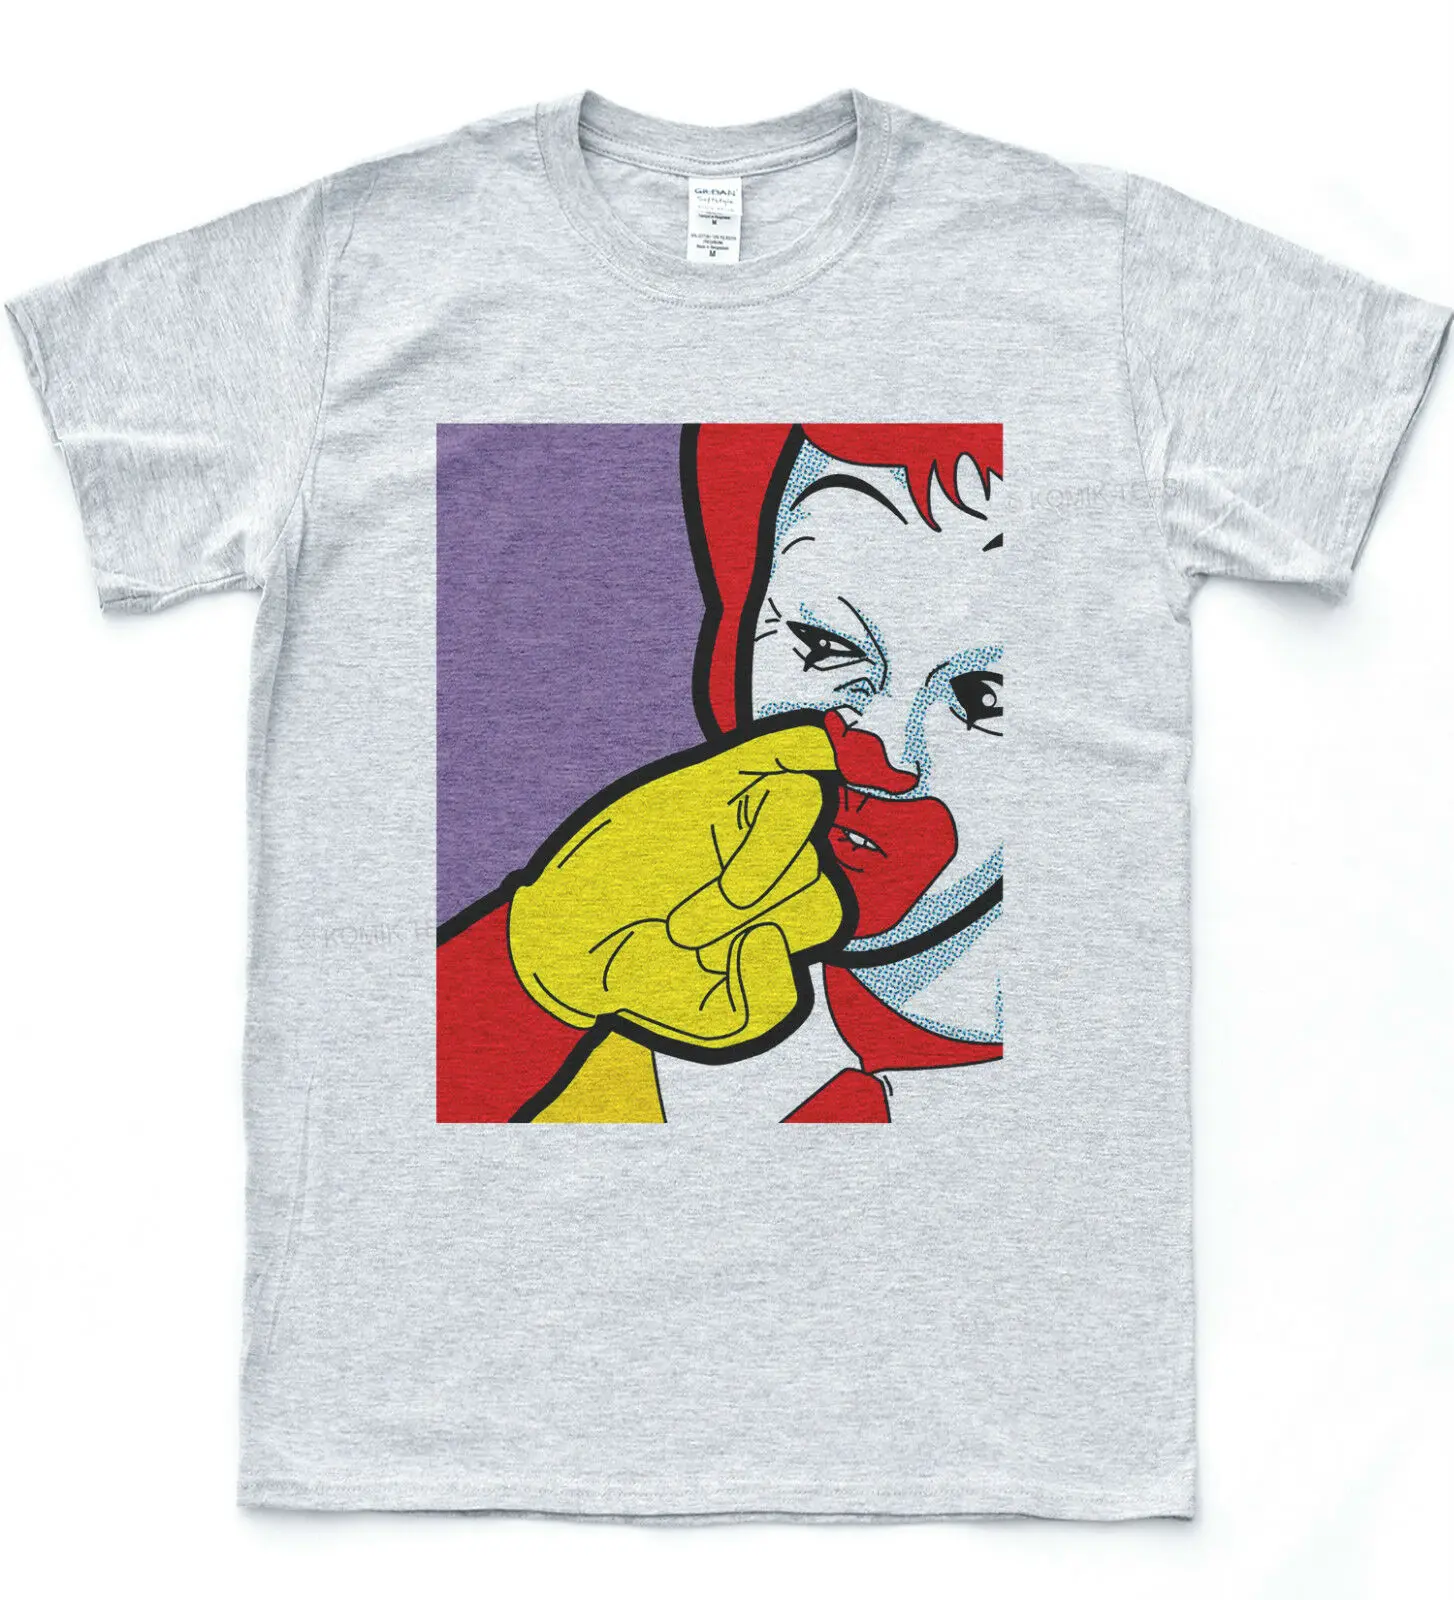 Рональд маккбургер Дональд поп художественная безрукавка забавная футболка с буггером хипстер Инди Топ